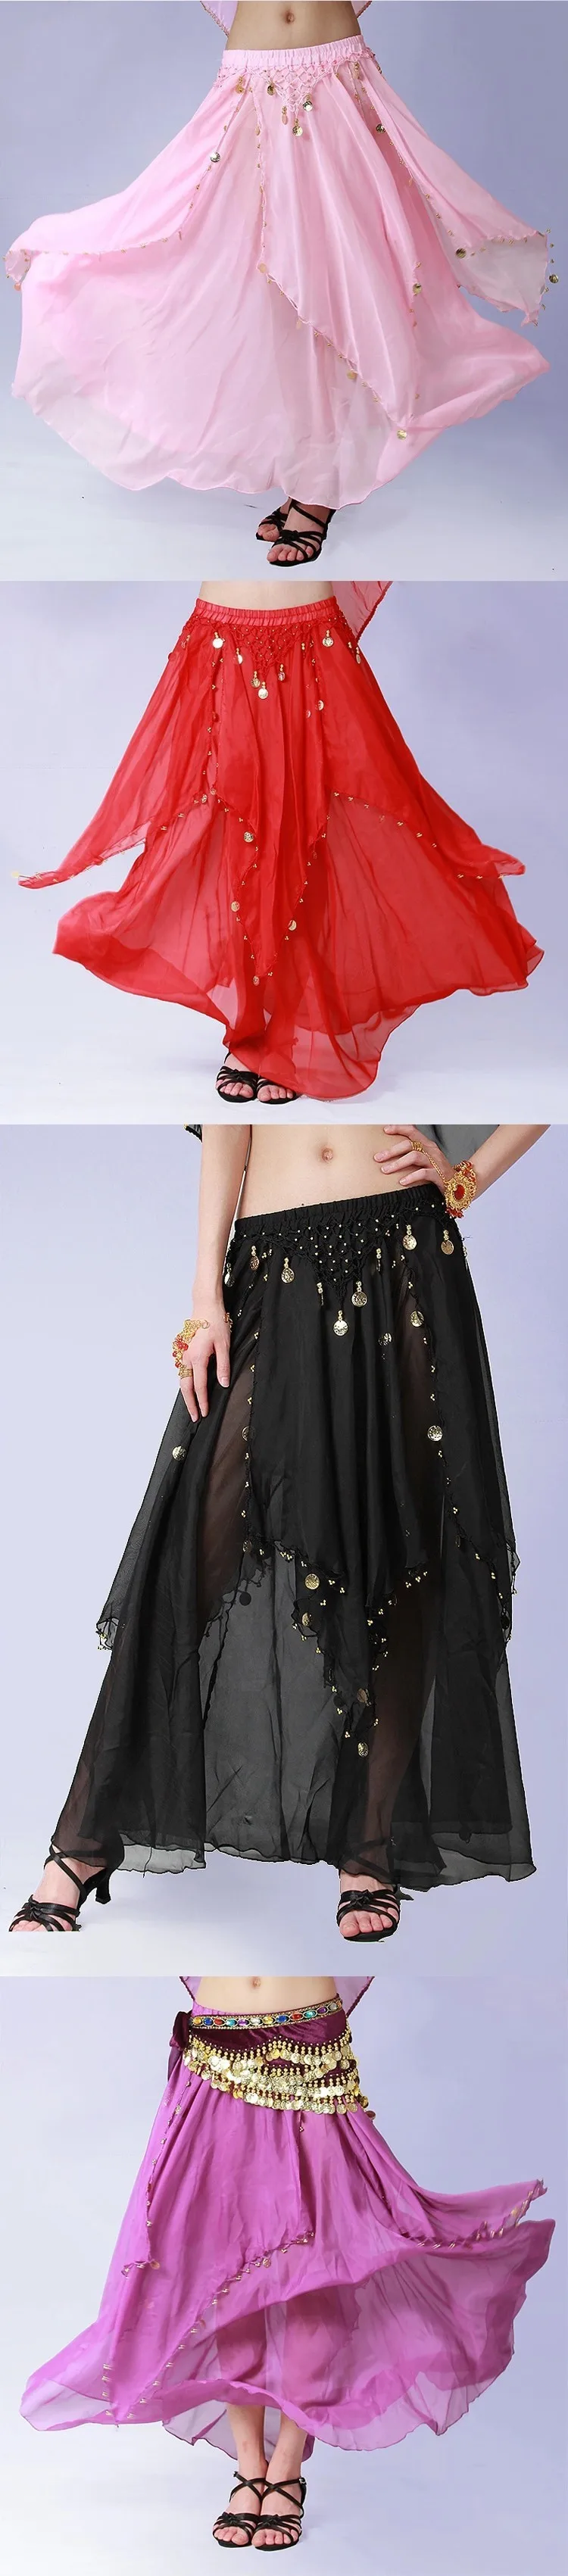 8 цветов однотонные танцевальная одежда Для женщин Болливуд Одежда для танцев шифоновая юбка в индийском стиле с эластичной резинкой на